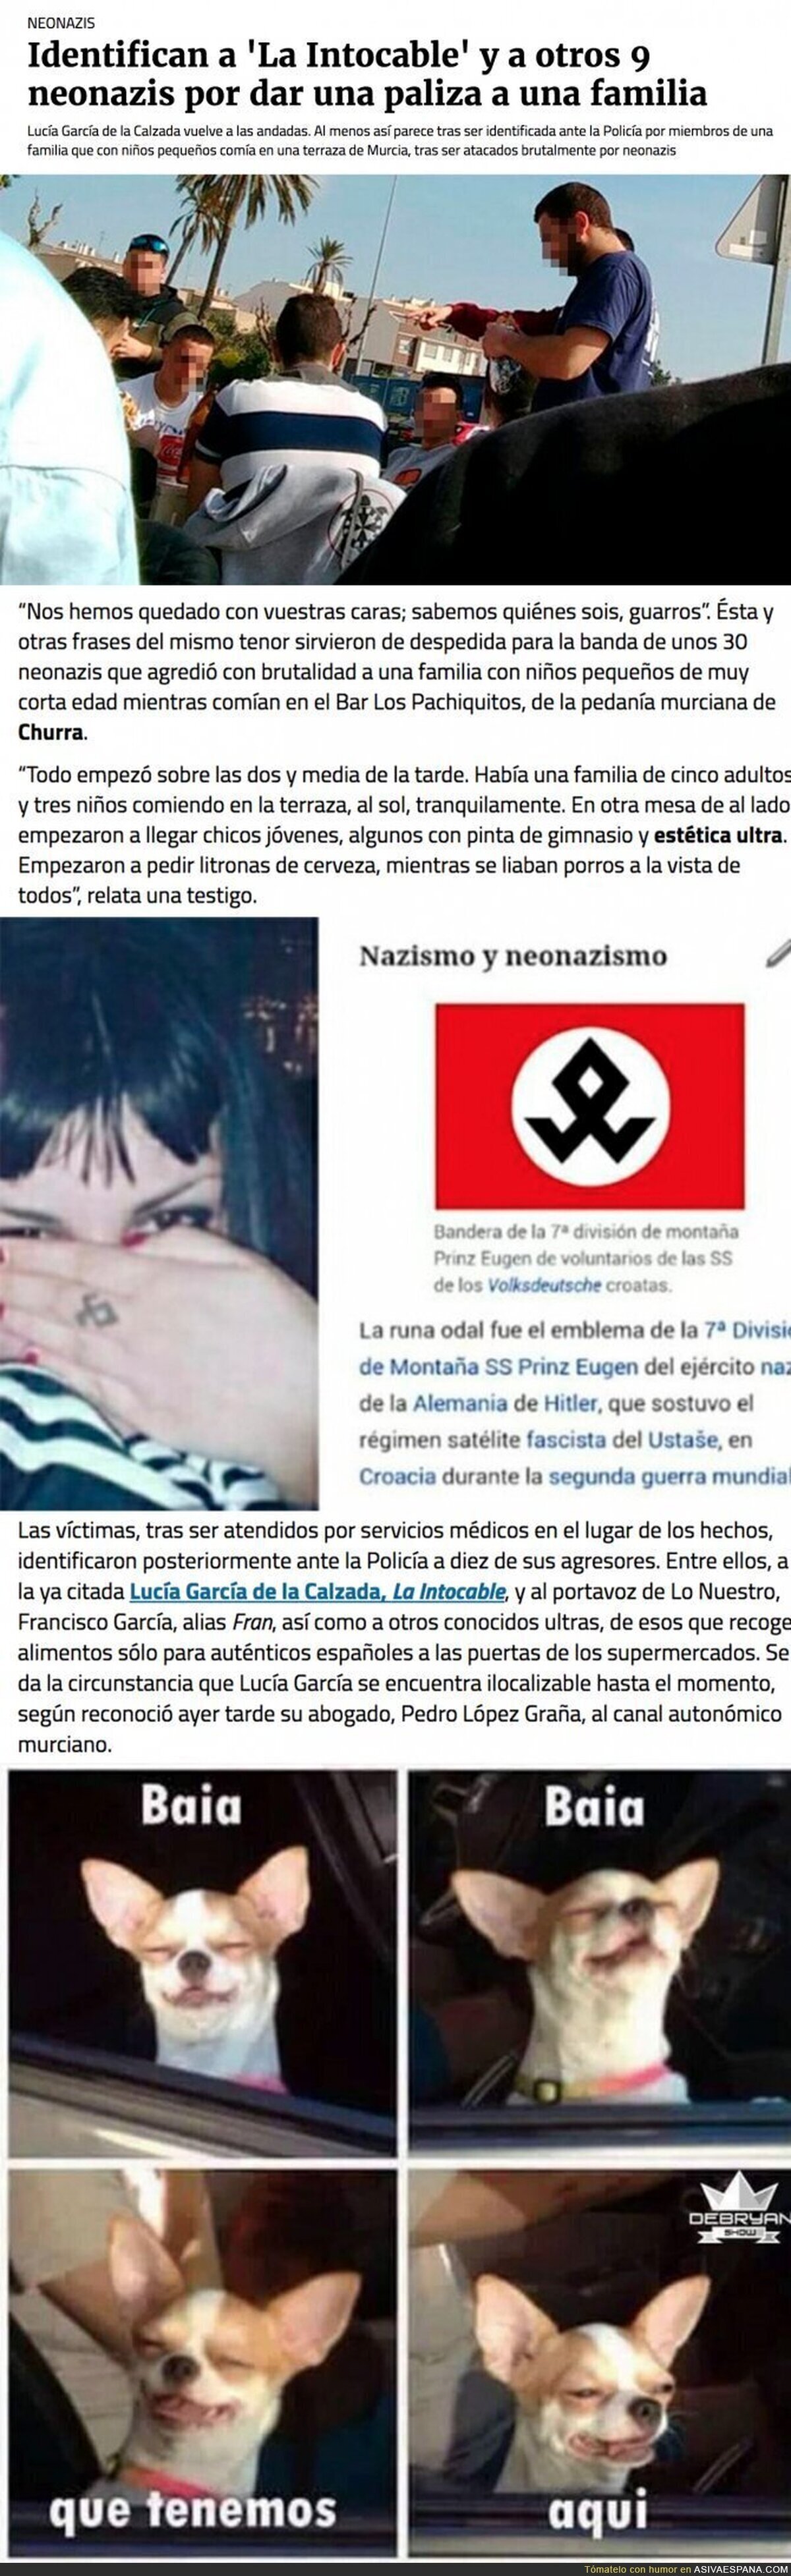 ¿Te acuerdas de la Nazi que pegaron en un local de Murcia? Ha sido pillada pegando a una familia